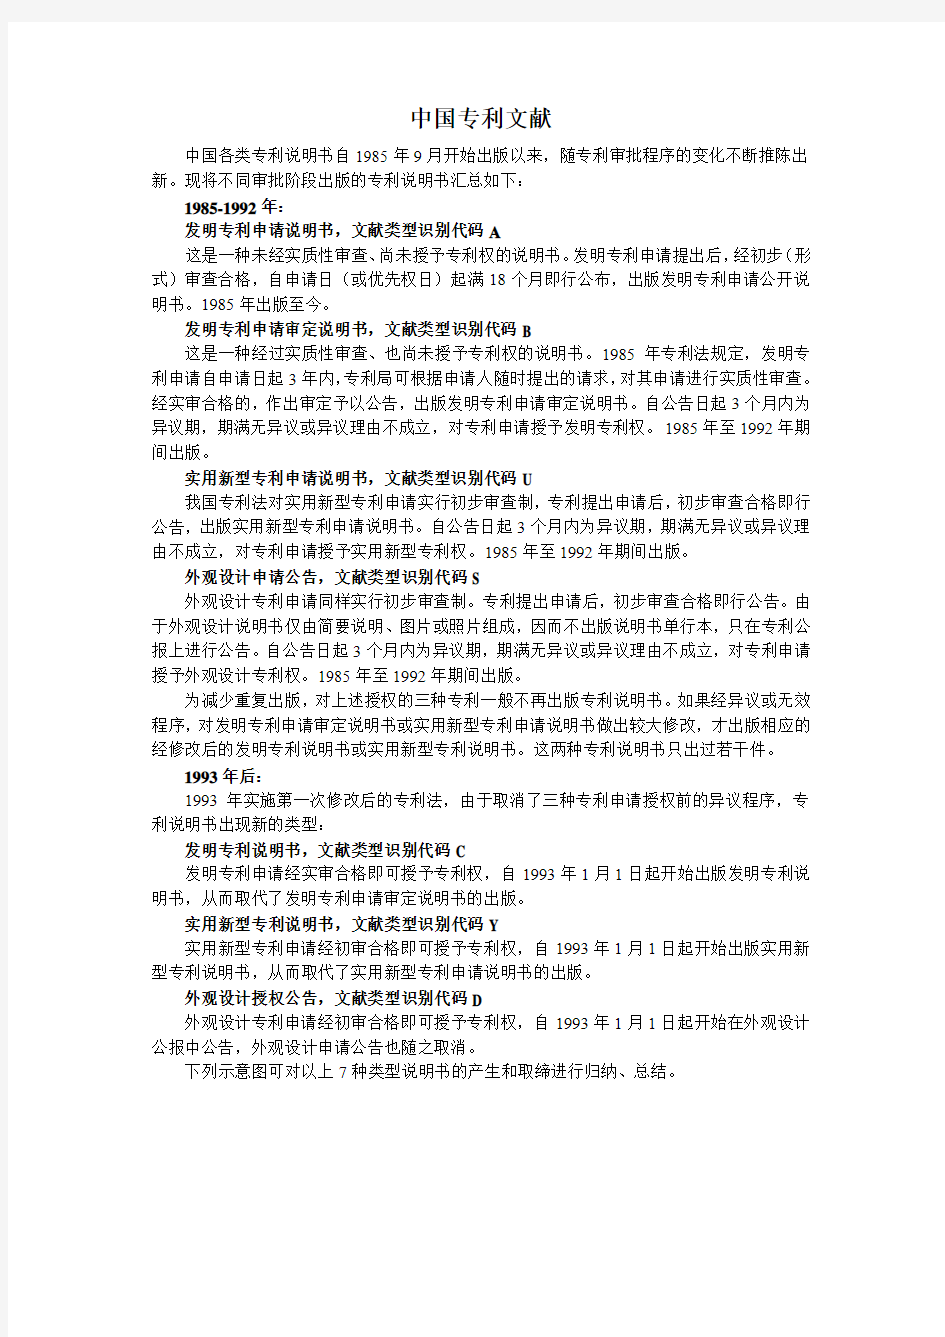 中国专利文献介绍